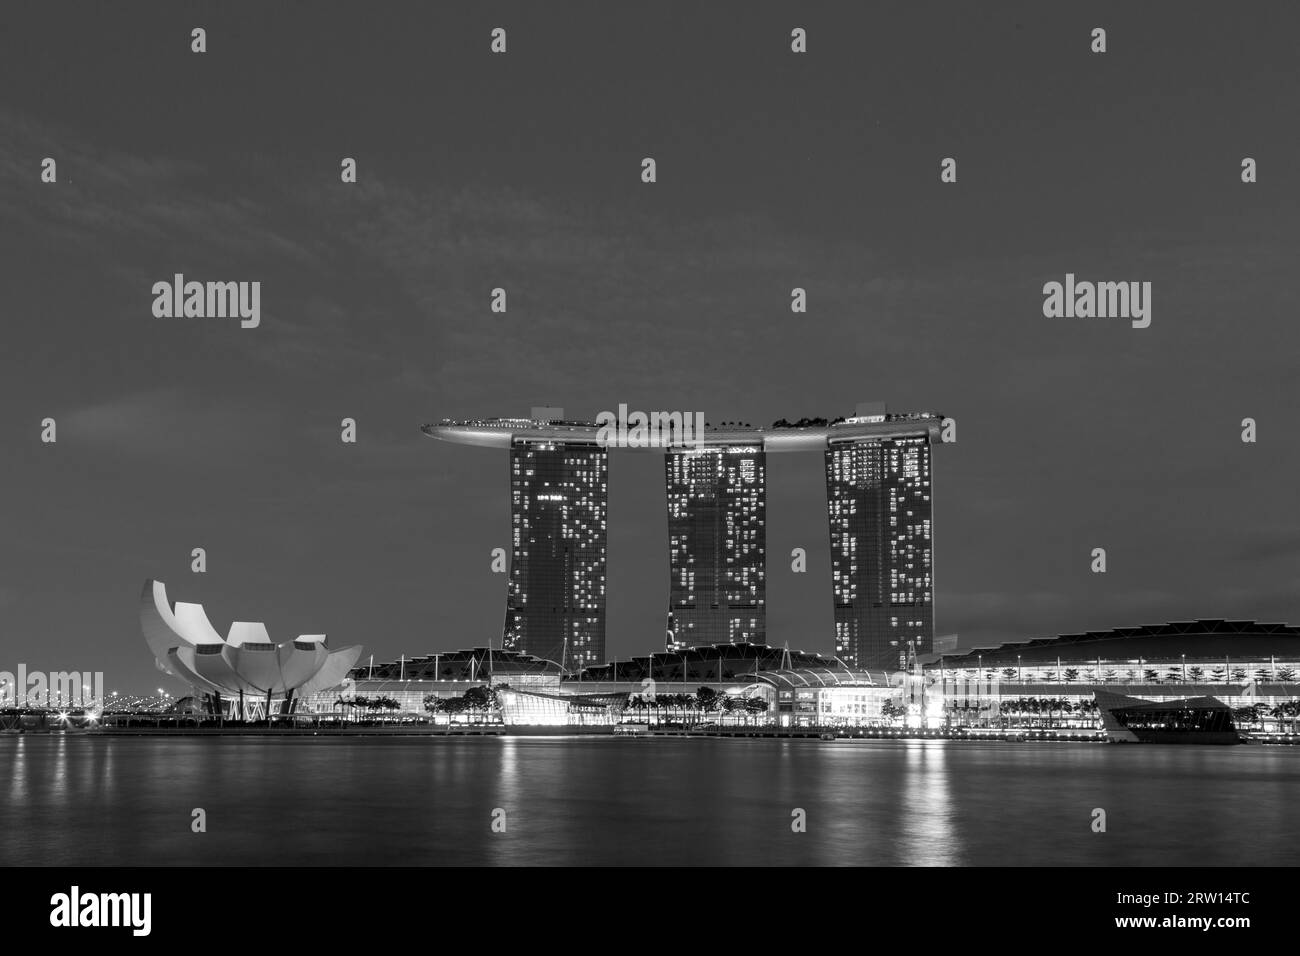 Singapour, Singapour, 30 janvier 2015 : photo noir et blanc de l'hôtel Marina Bay Sands de nuit Banque D'Images